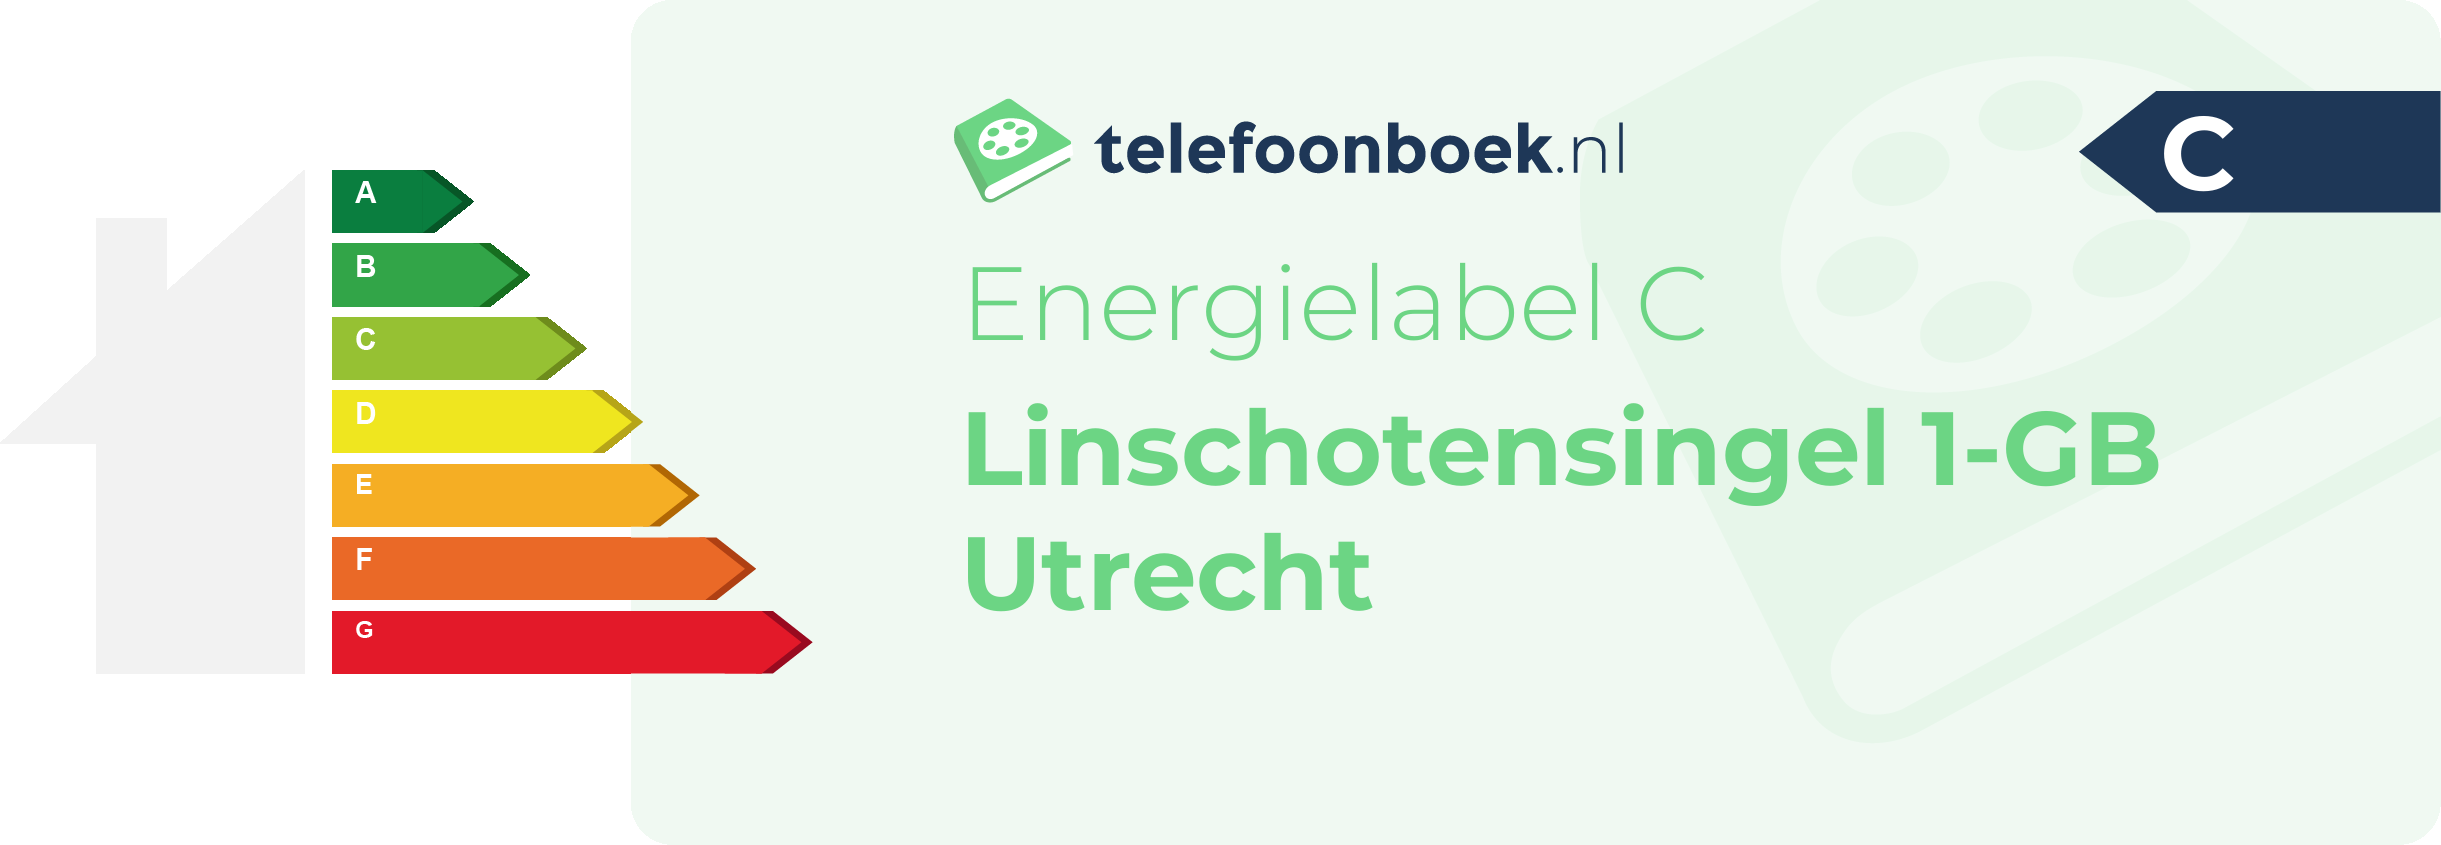 Energielabel Linschotensingel 1-GB Utrecht